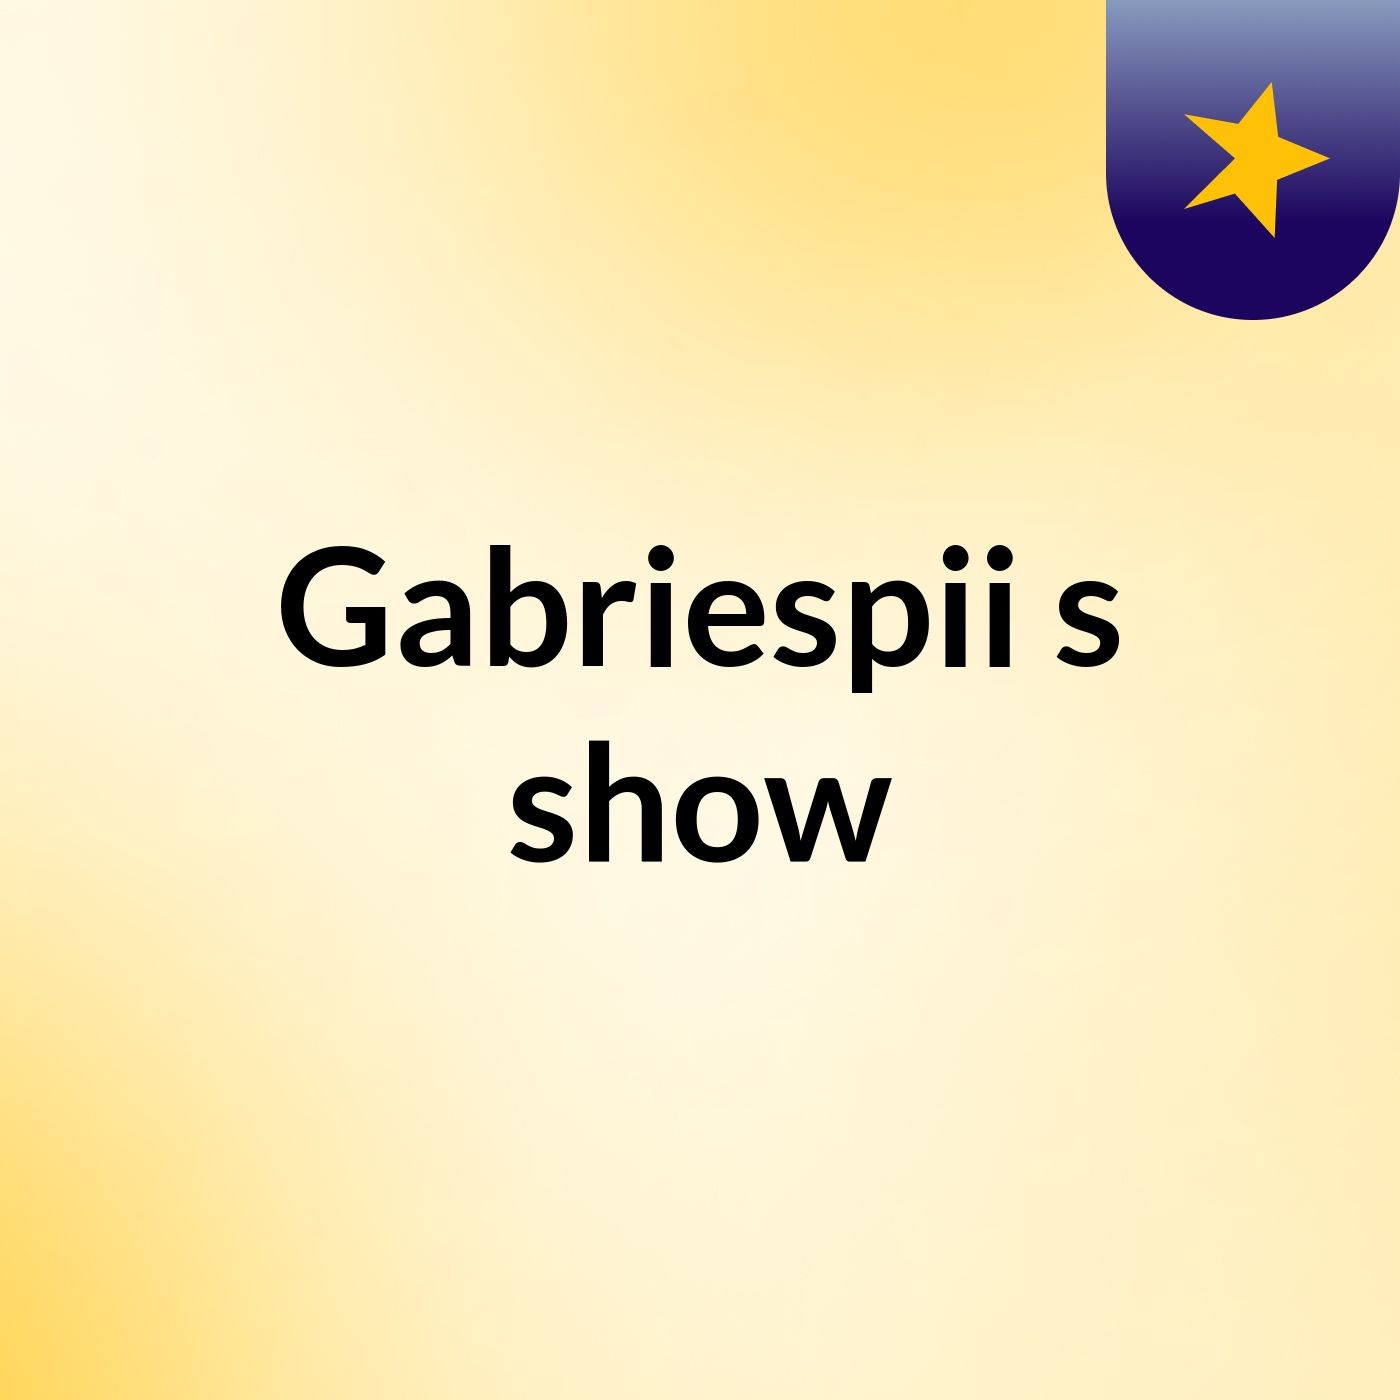 Gabriespii's show